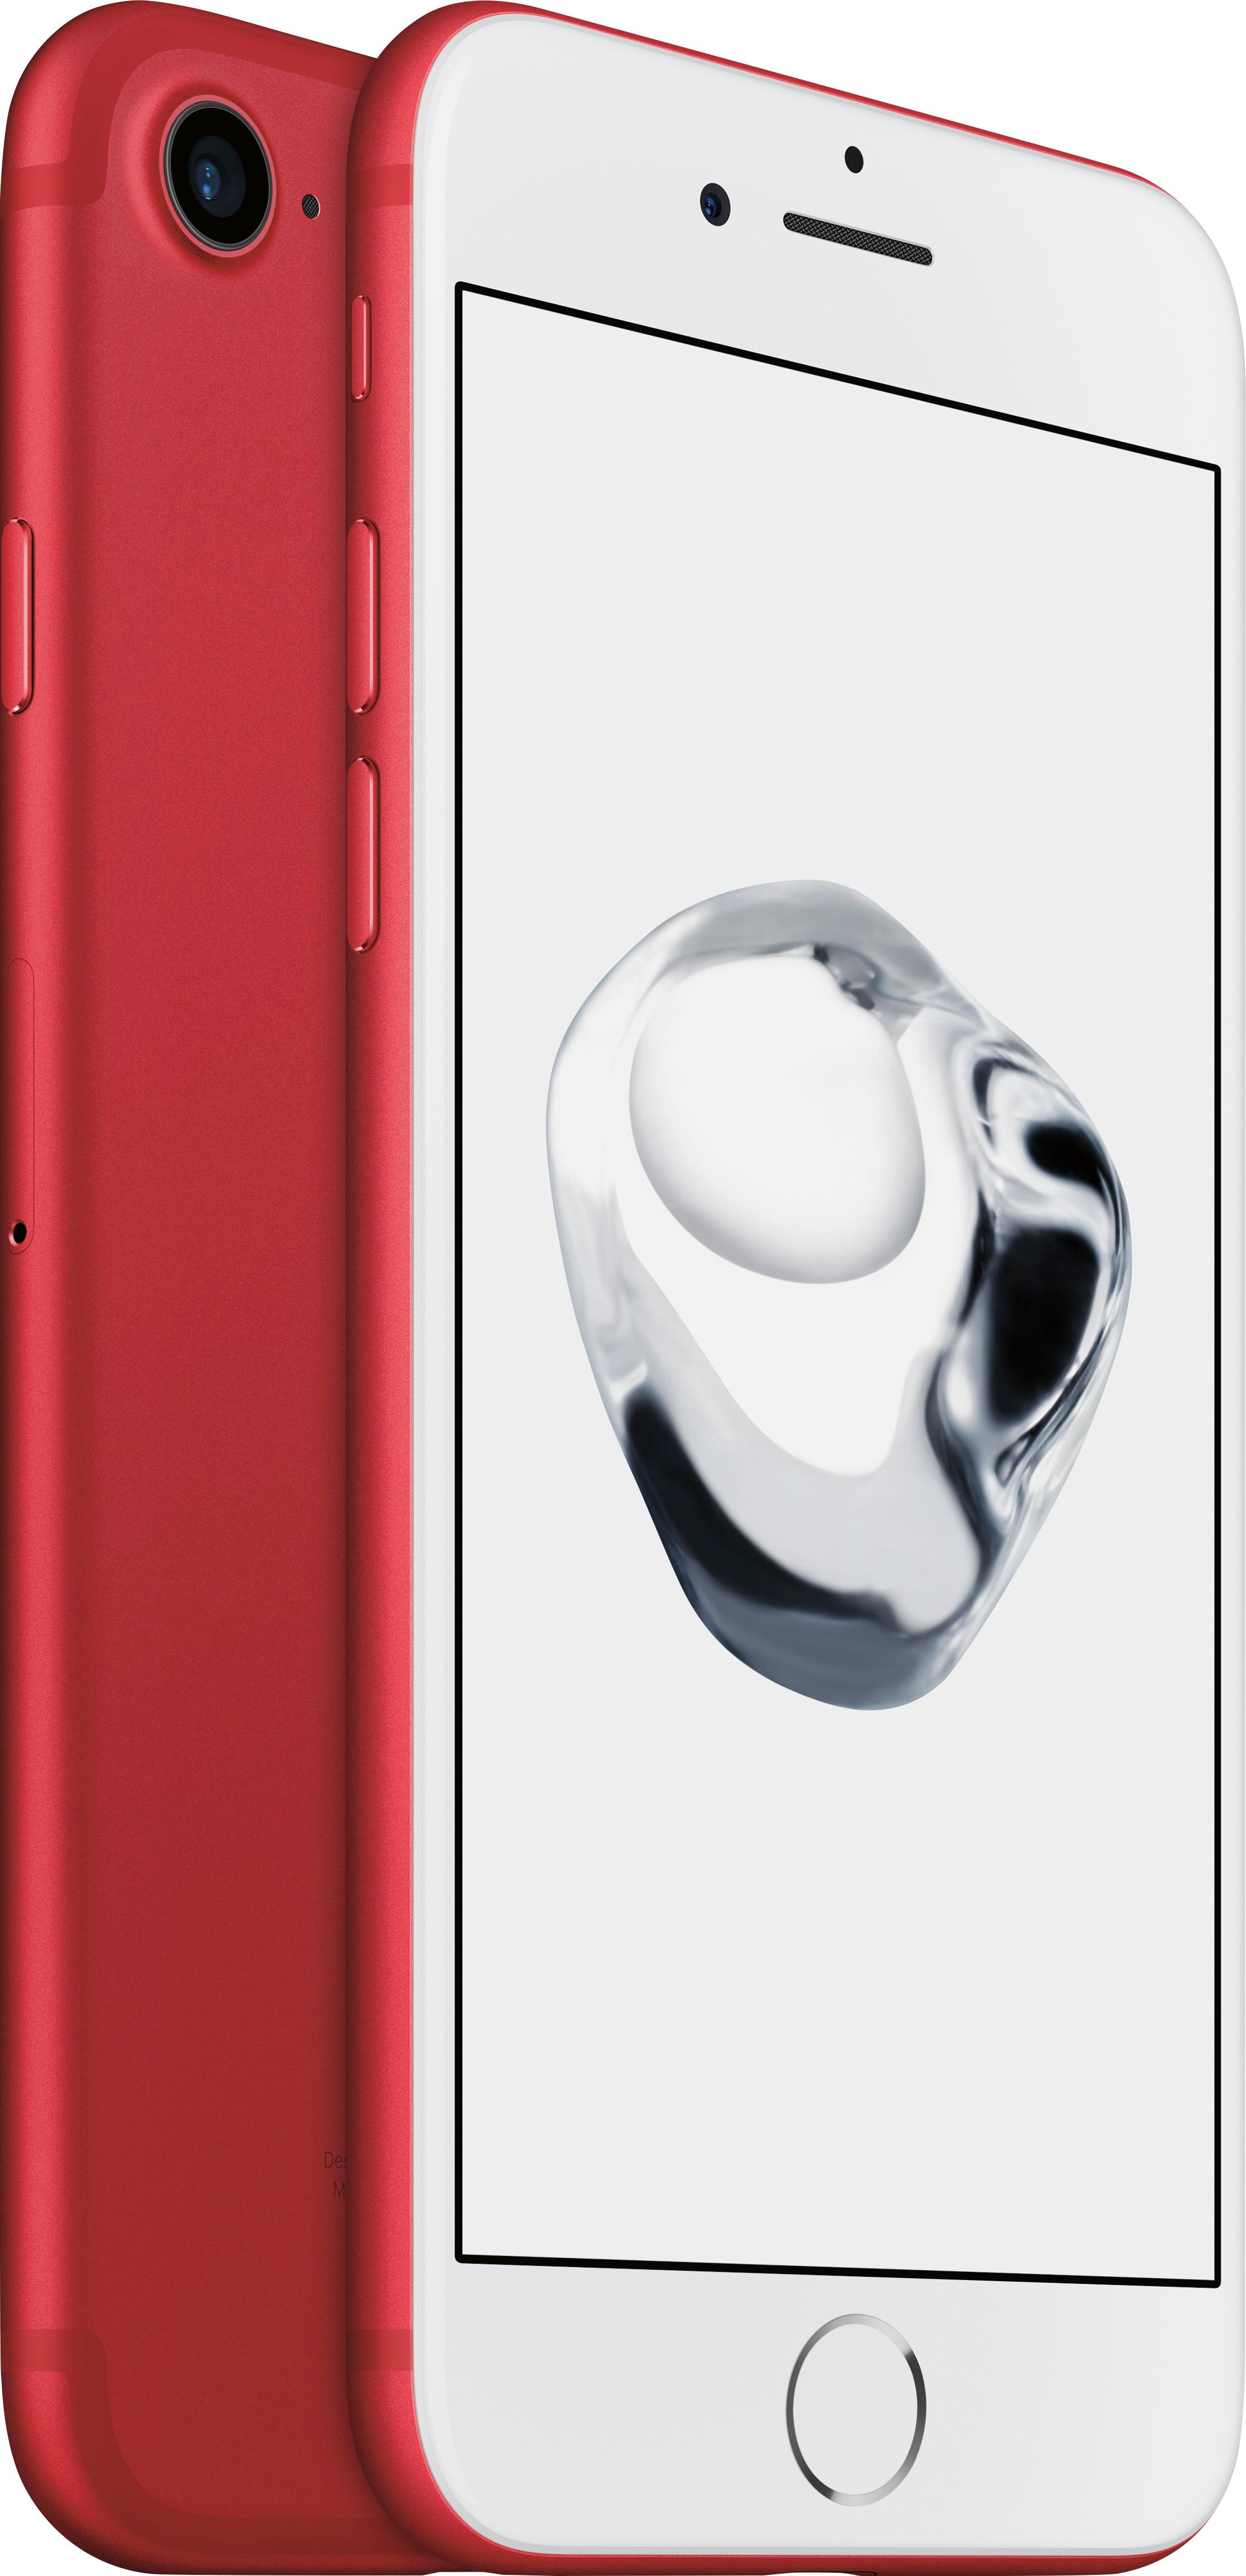 スマートフォン/携帯電話 スマートフォン本体 Best Buy: Apple iPhone 7 128GB (PRODUCT)RED (Sprint) MPRH2LL/A